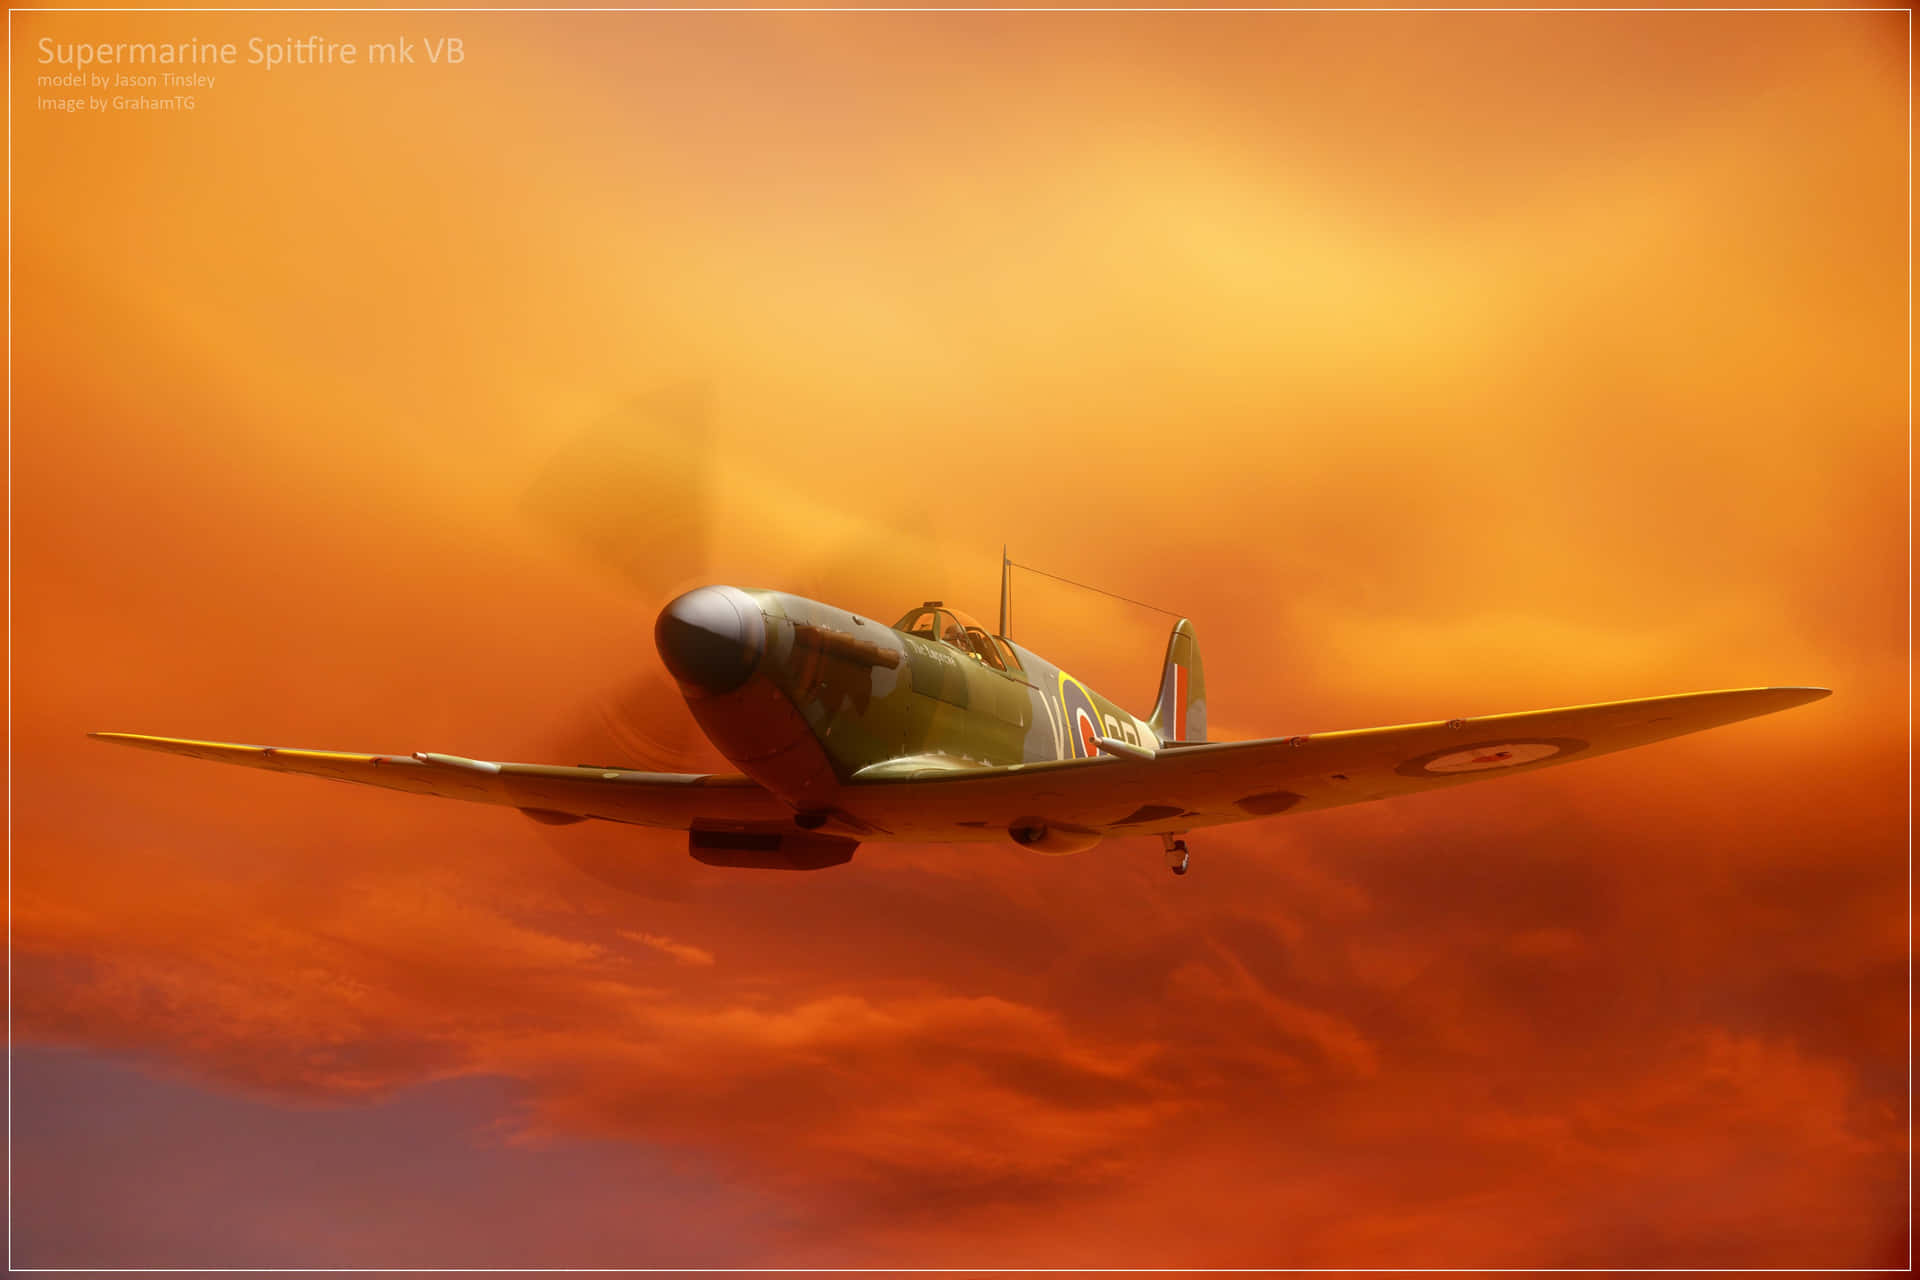 En Spitfire-flyvning gennem luften, der repræsenterer triumf, mod og styrke. Wallpaper